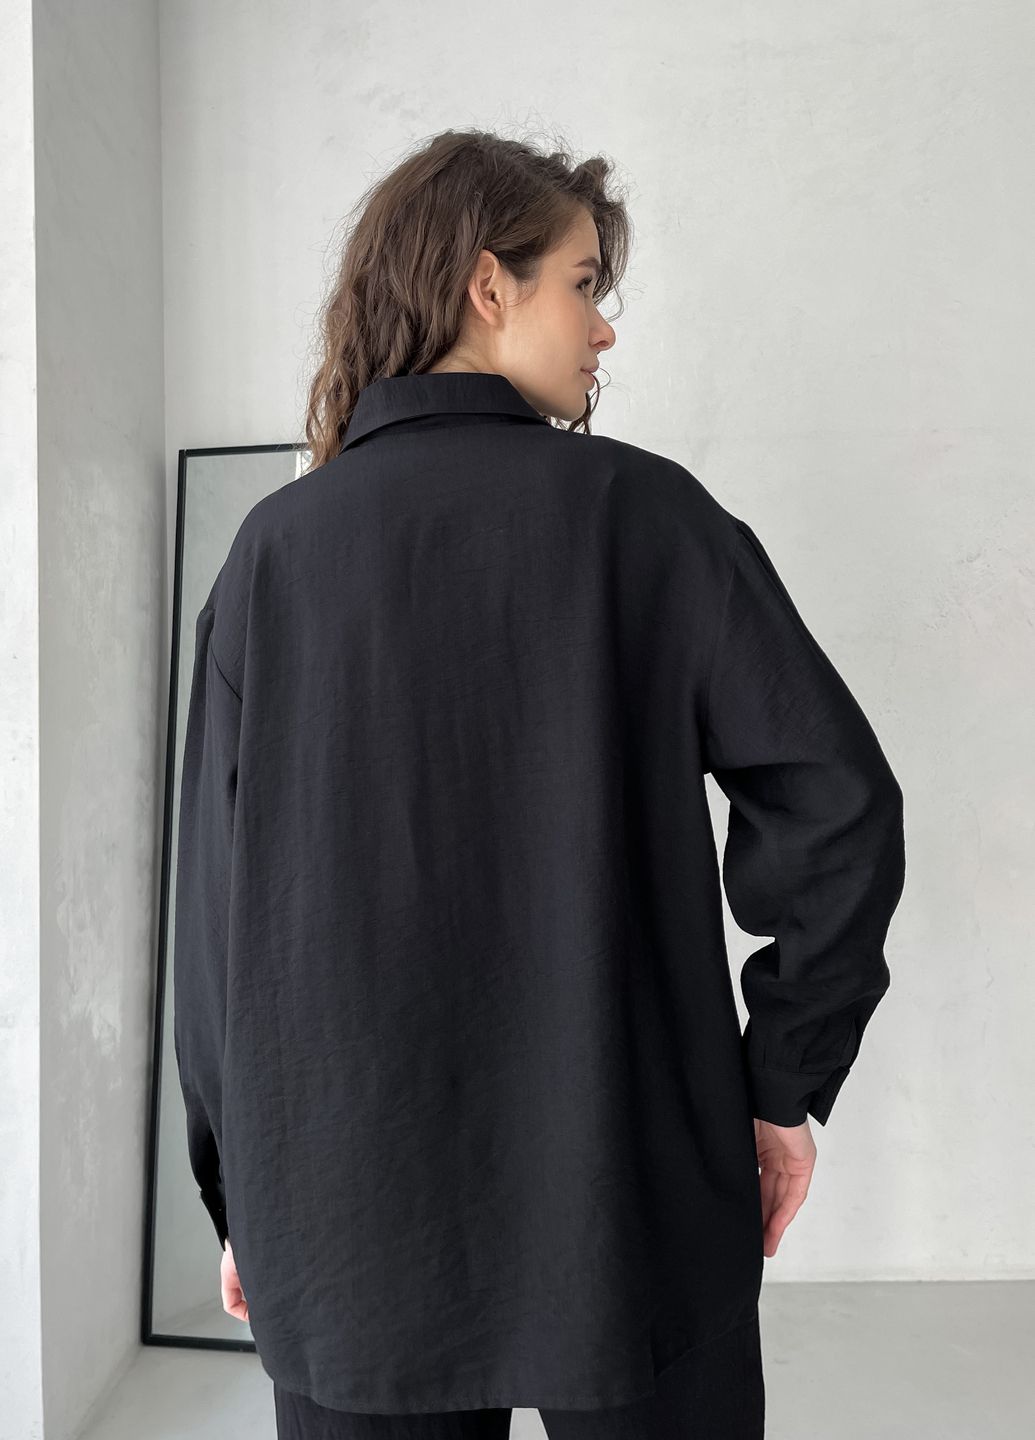 Купить Рубашка женская с длинным рукавом черного цвета из льна Merlini Беллуно 200000241, размер 42-44 в интернет-магазине